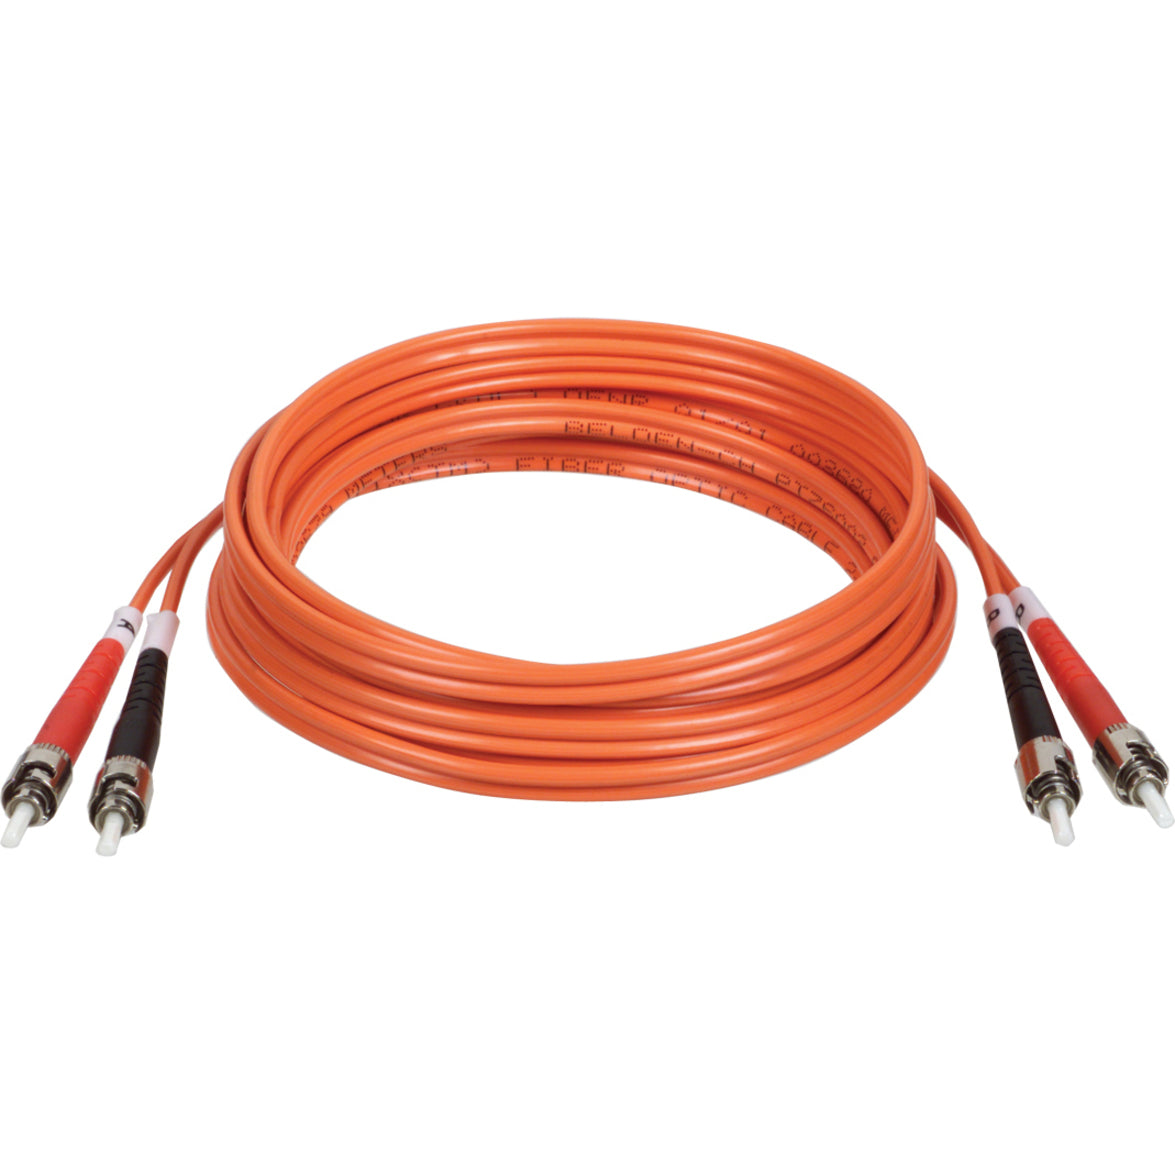 Tripp Lite N302-010 Duplex Fiber Optic Patch Cable, 10 ft, ST/ST 62.5/125 Fiber, Lifetime Warranty